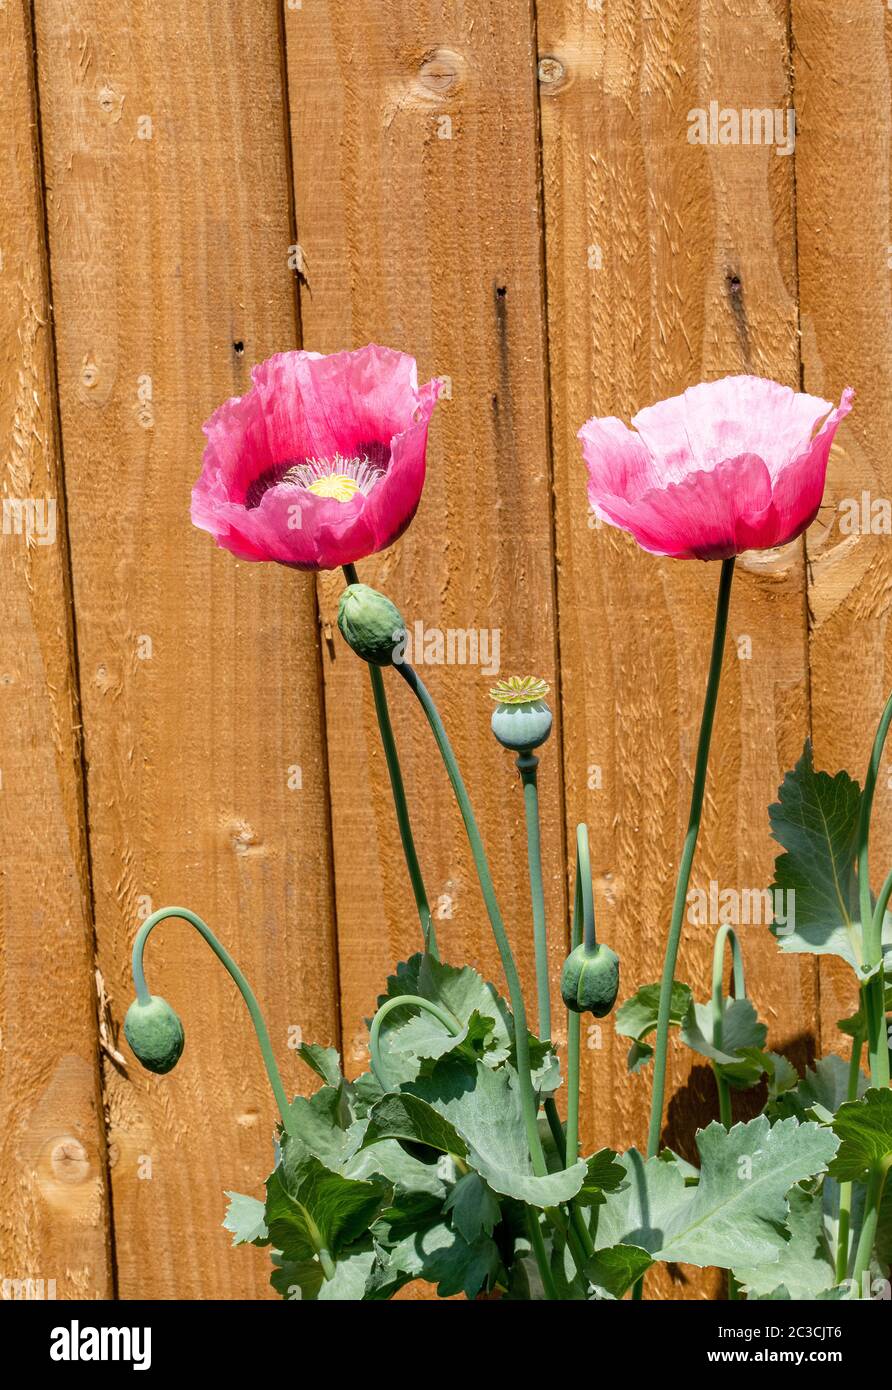 Schöne rosa Opium Poppy Blüten in Blume mit einem Zaun Panel Hintergrund in einem Garten in Alsager Cheshire England Vereinigtes Königreich Großbritannien Stockfoto